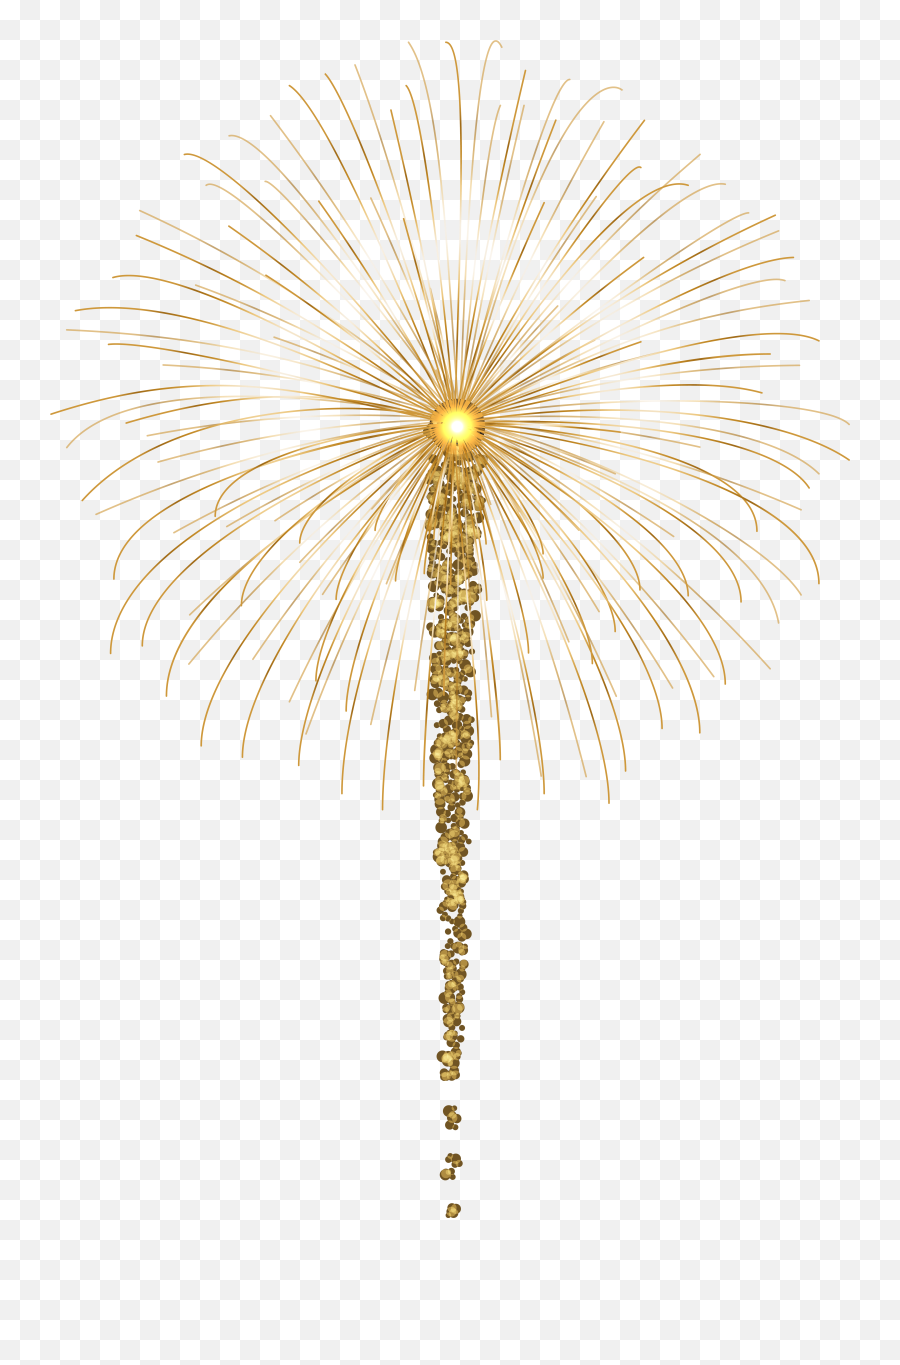 Fireworks For Dark Images Png Clip Art - Transparent Gold Palm Tree Png,Firework Png